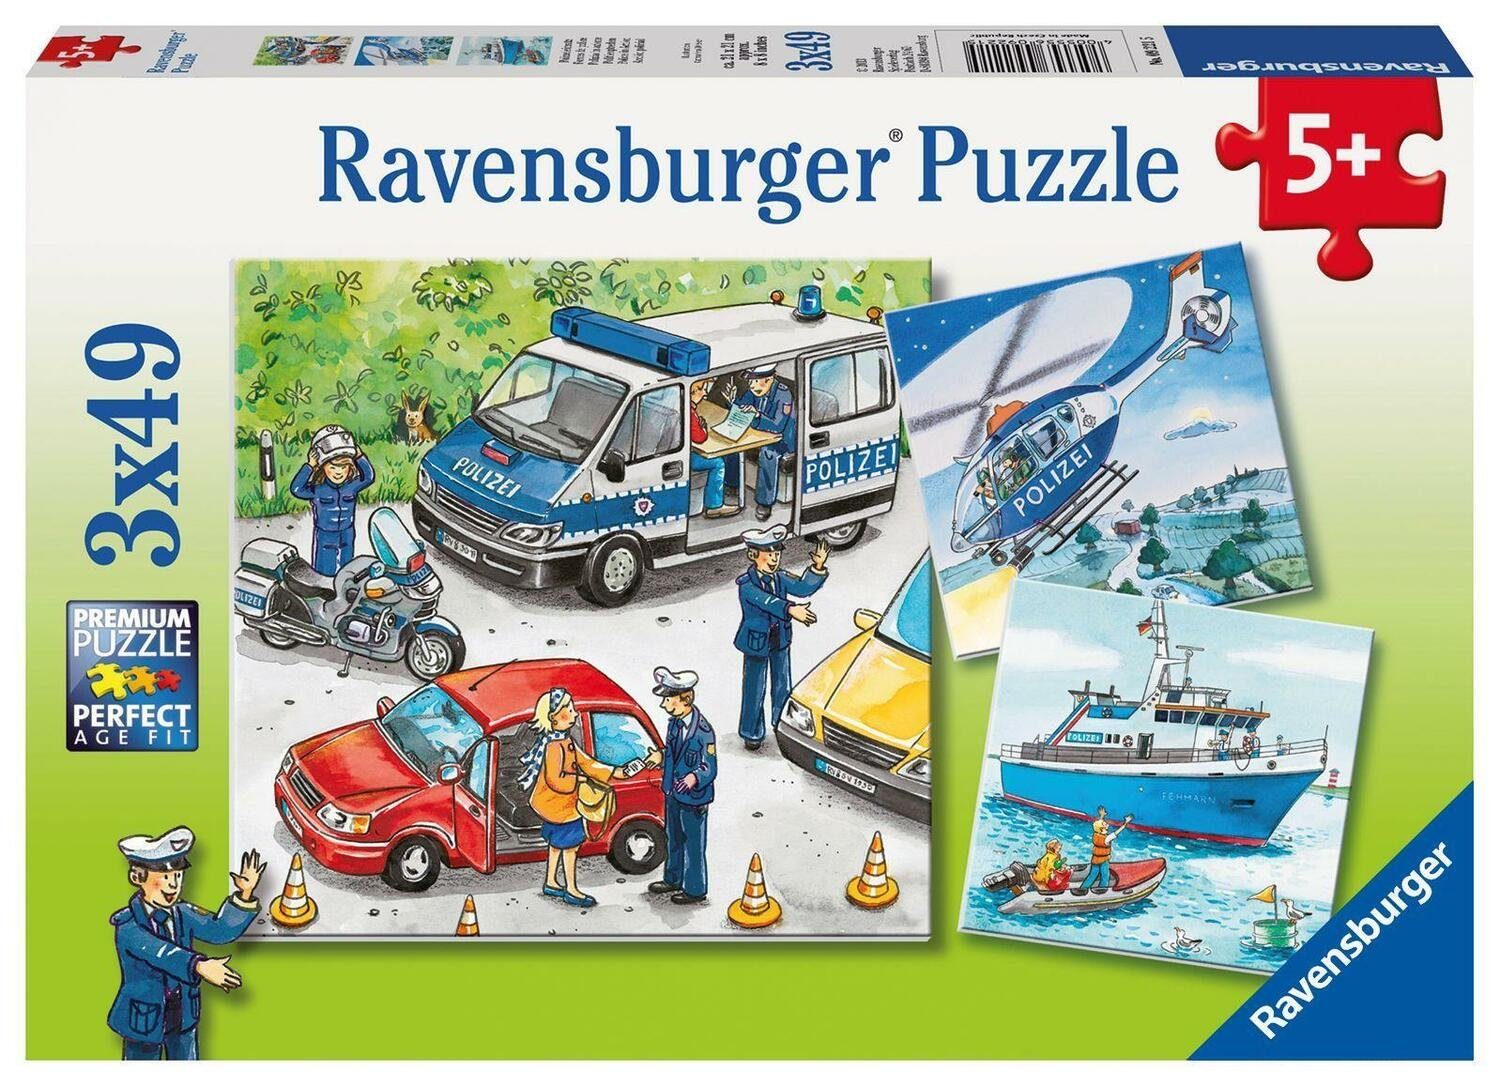 Ravensburger Puzzle Ravensburger Puzzle. Polizeieinsatz, 49 Puzzleteile